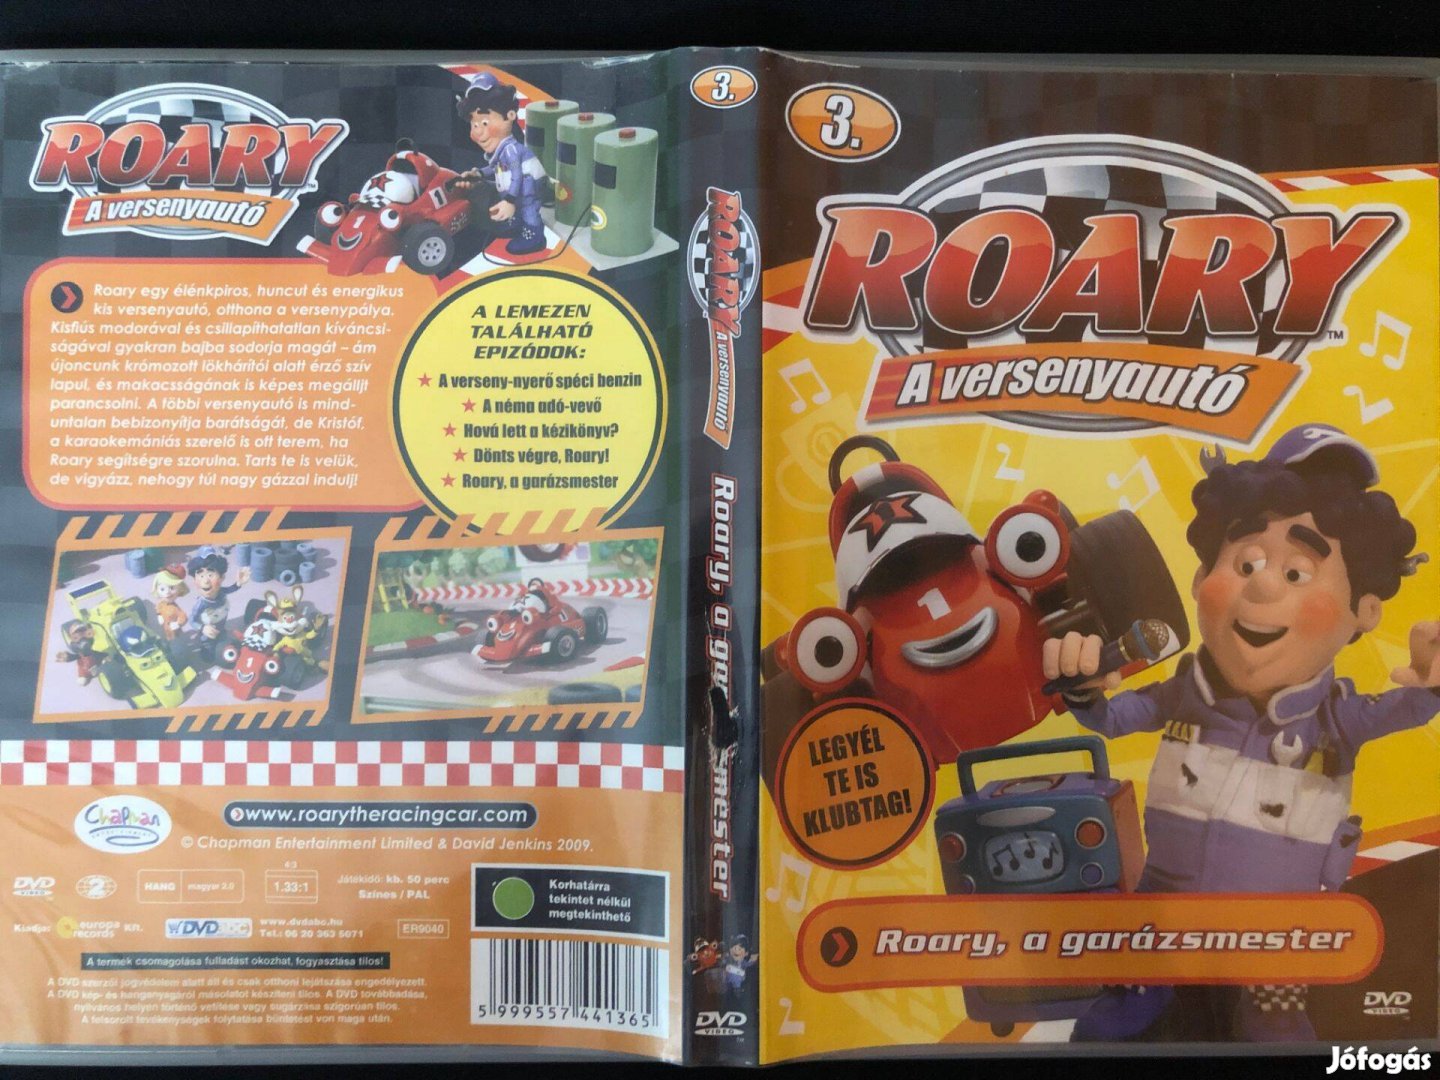 Roary, a versenyautó Roary, a garázsmester DVD